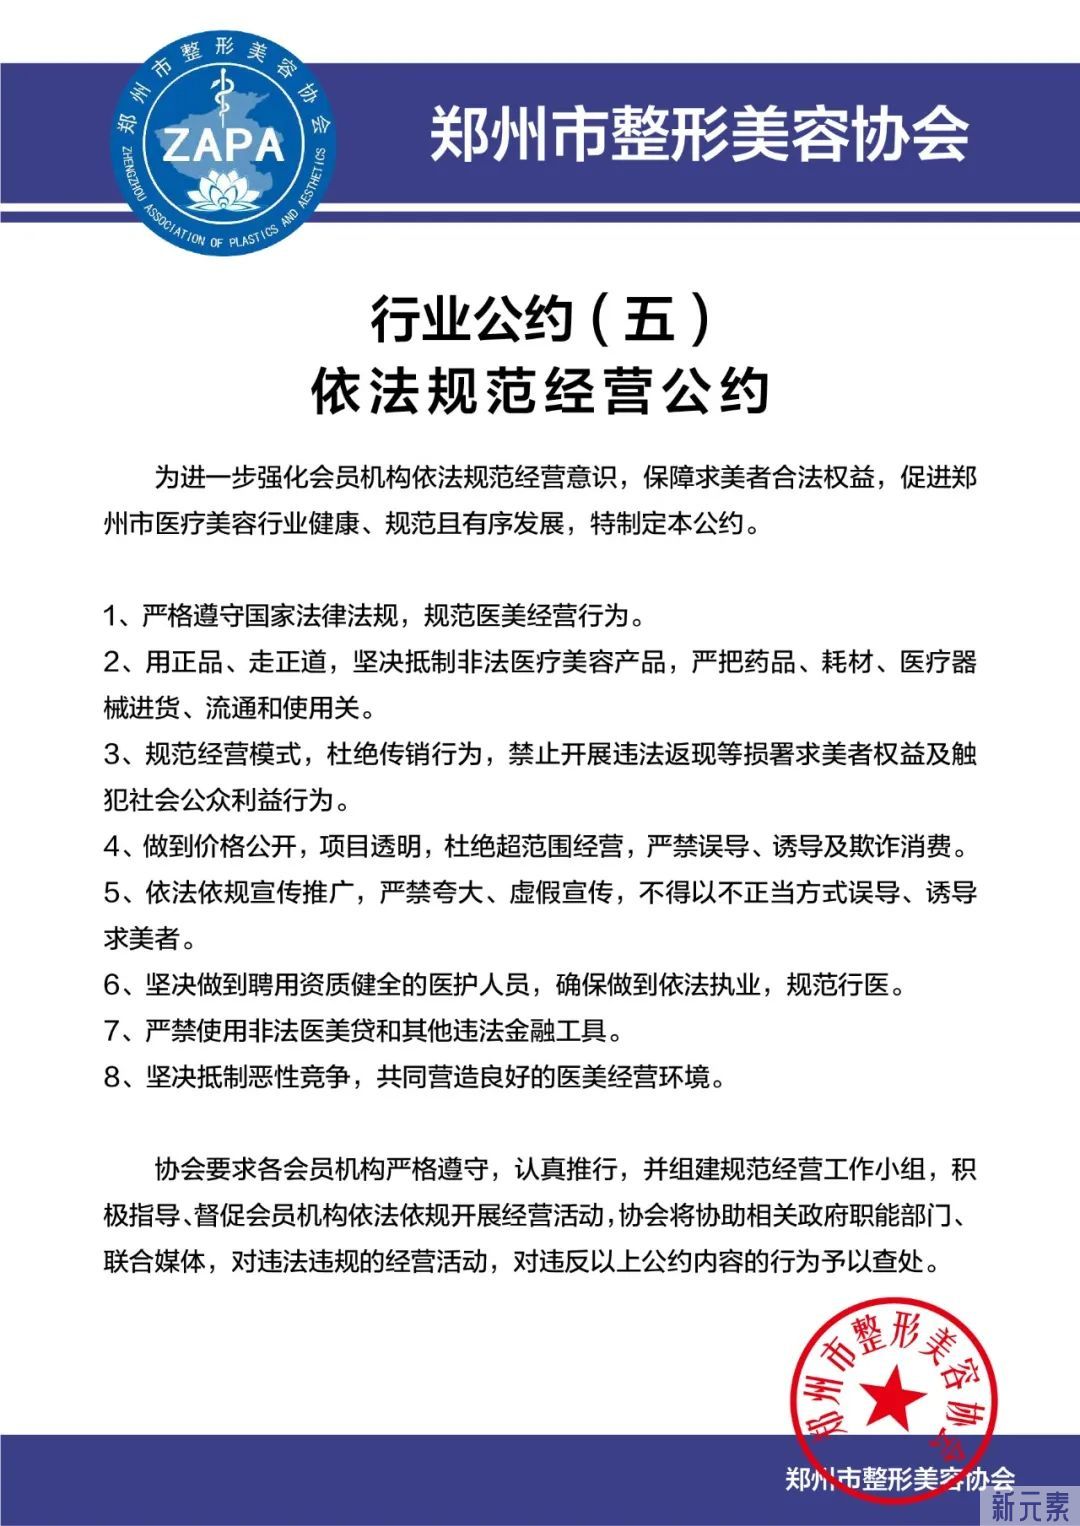 郑州市整形美容协会发布郑州市医疗美容行业自律公约 图片-7